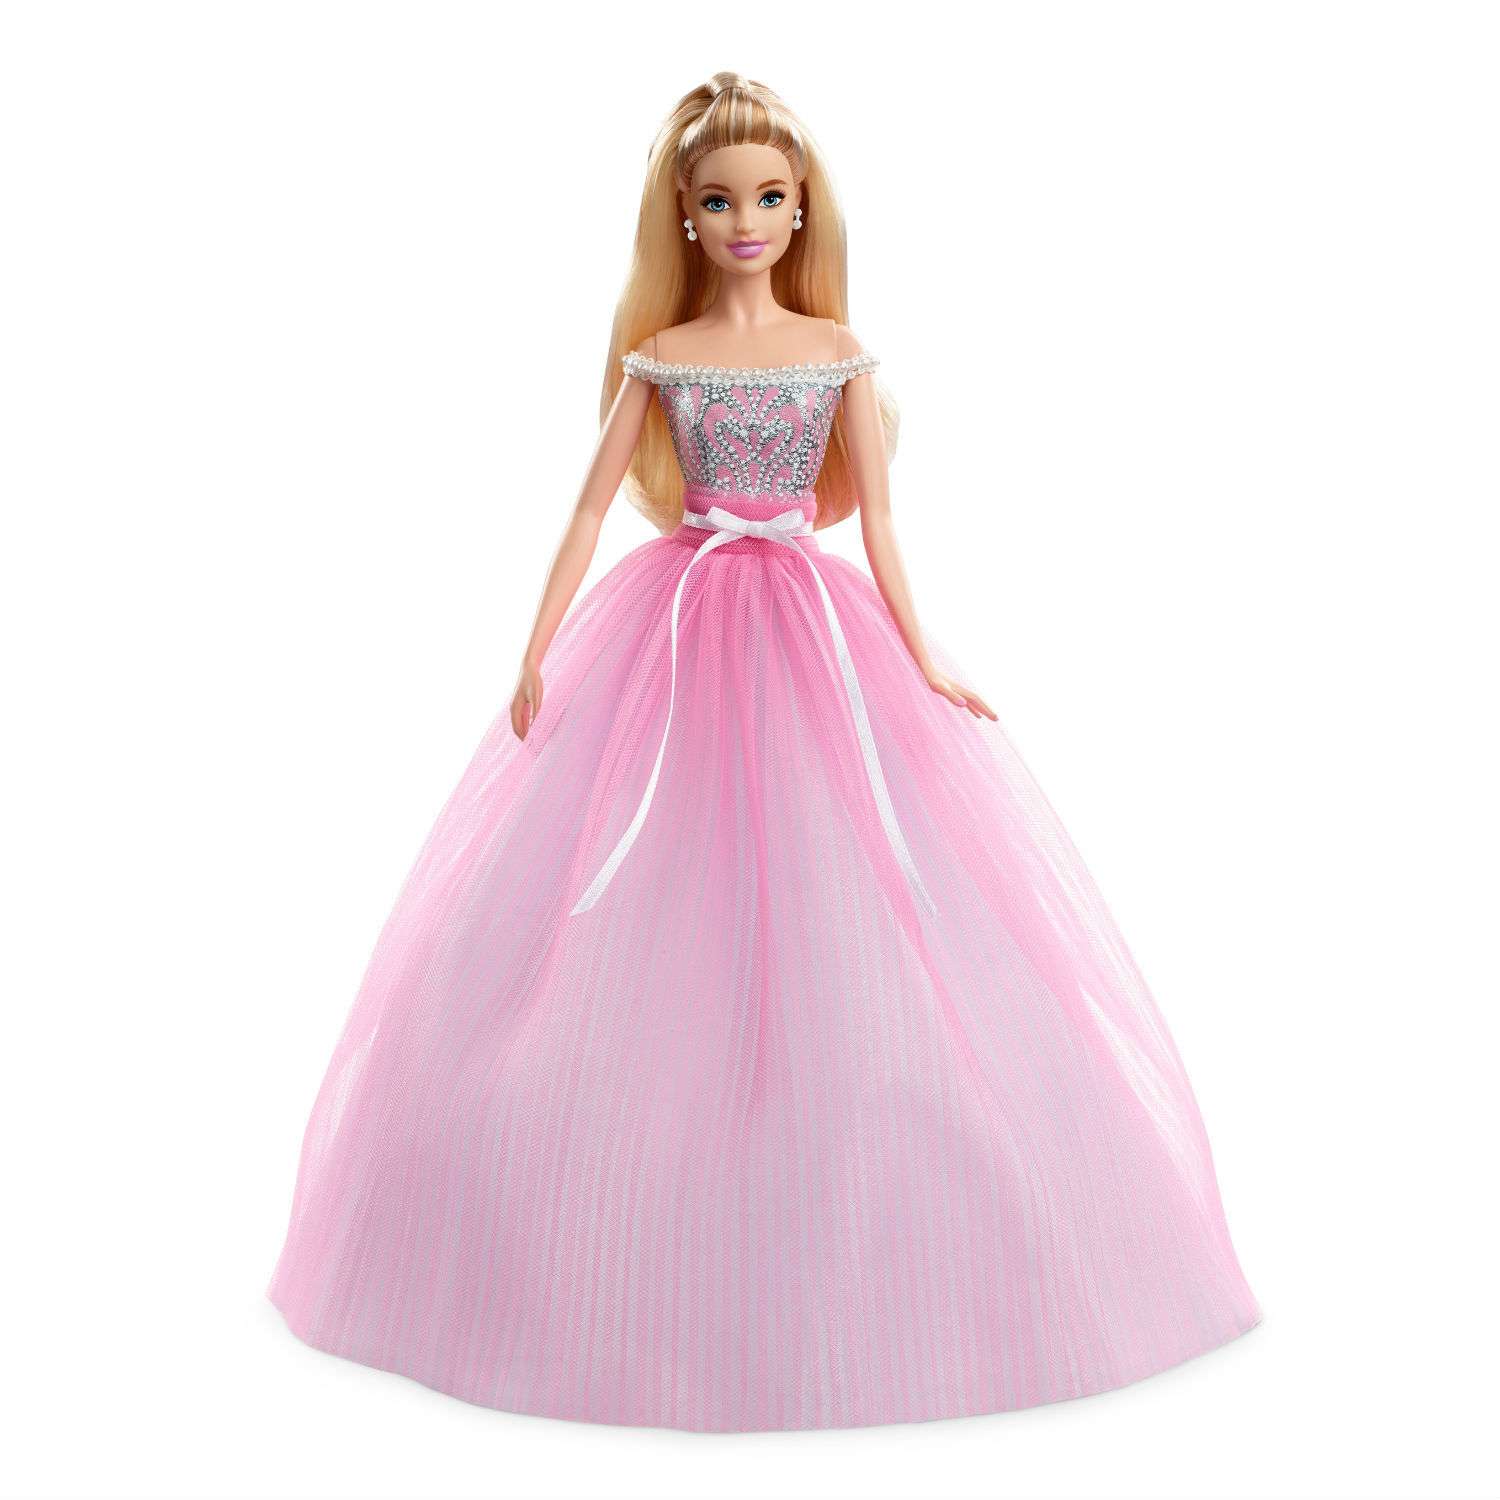 Кукла Barbie Пожелания ко дню рождения DVP49 - фото 1